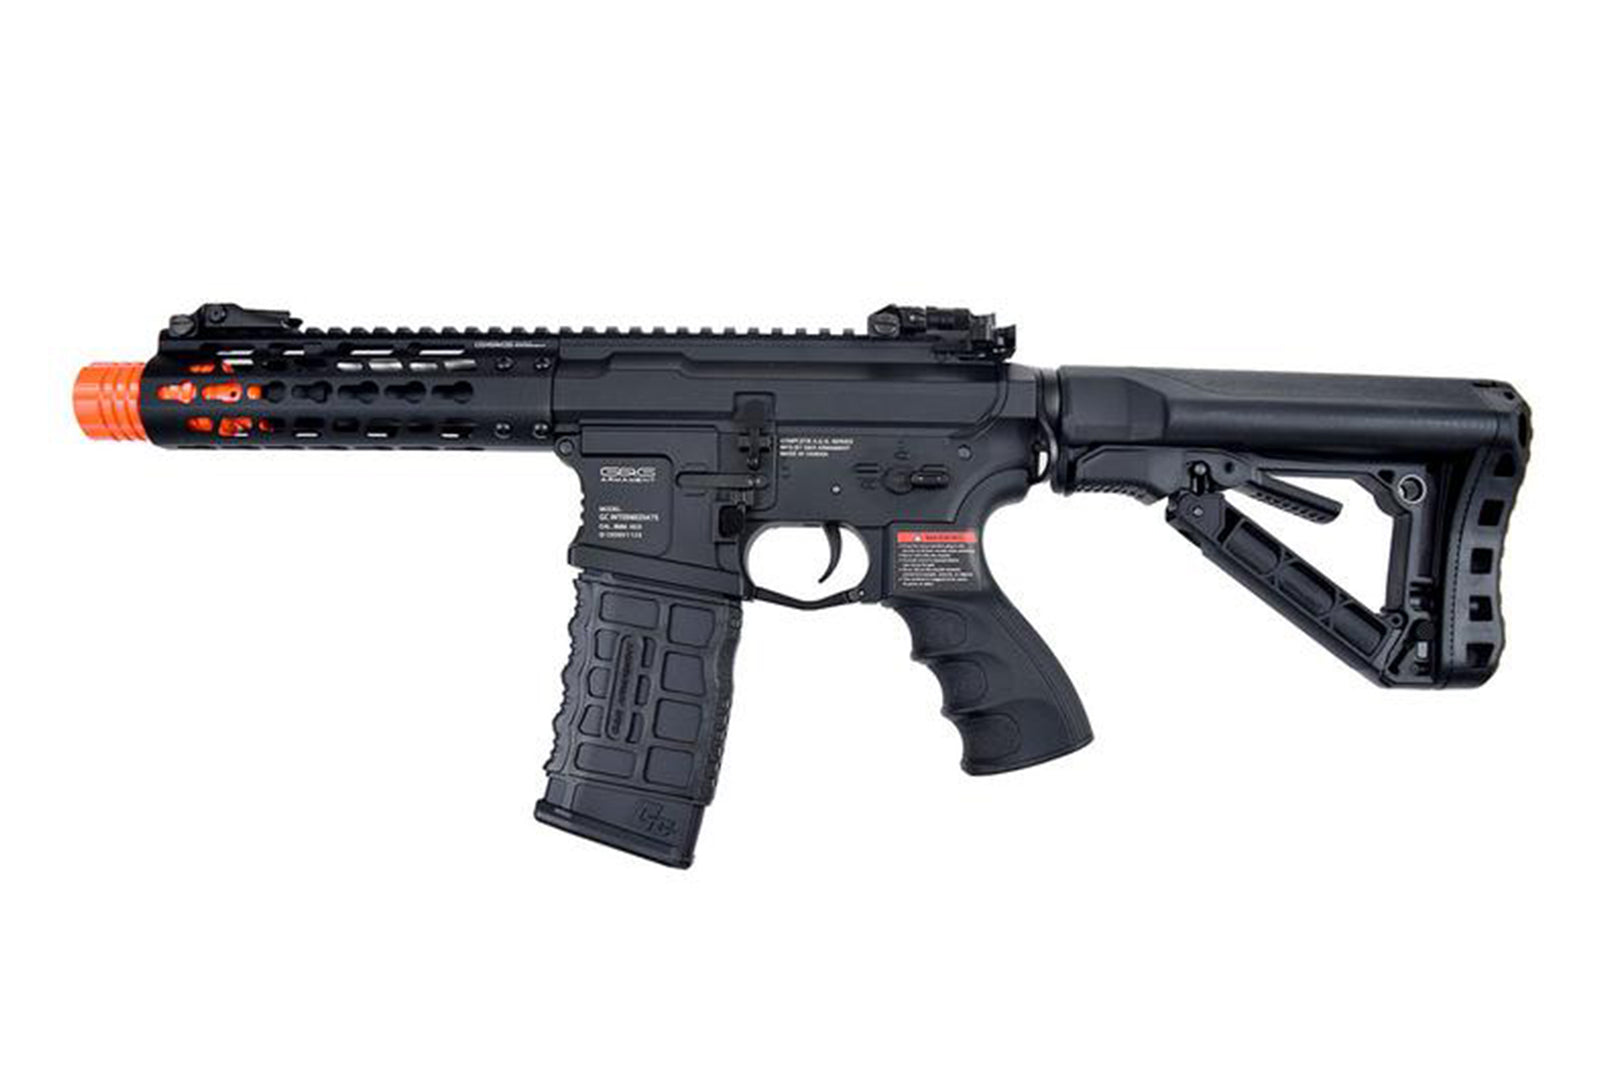 G&G CM16 "Wild Hog" Polymer Airsoft AEG Rifle with 7" Keymod Rail - Black